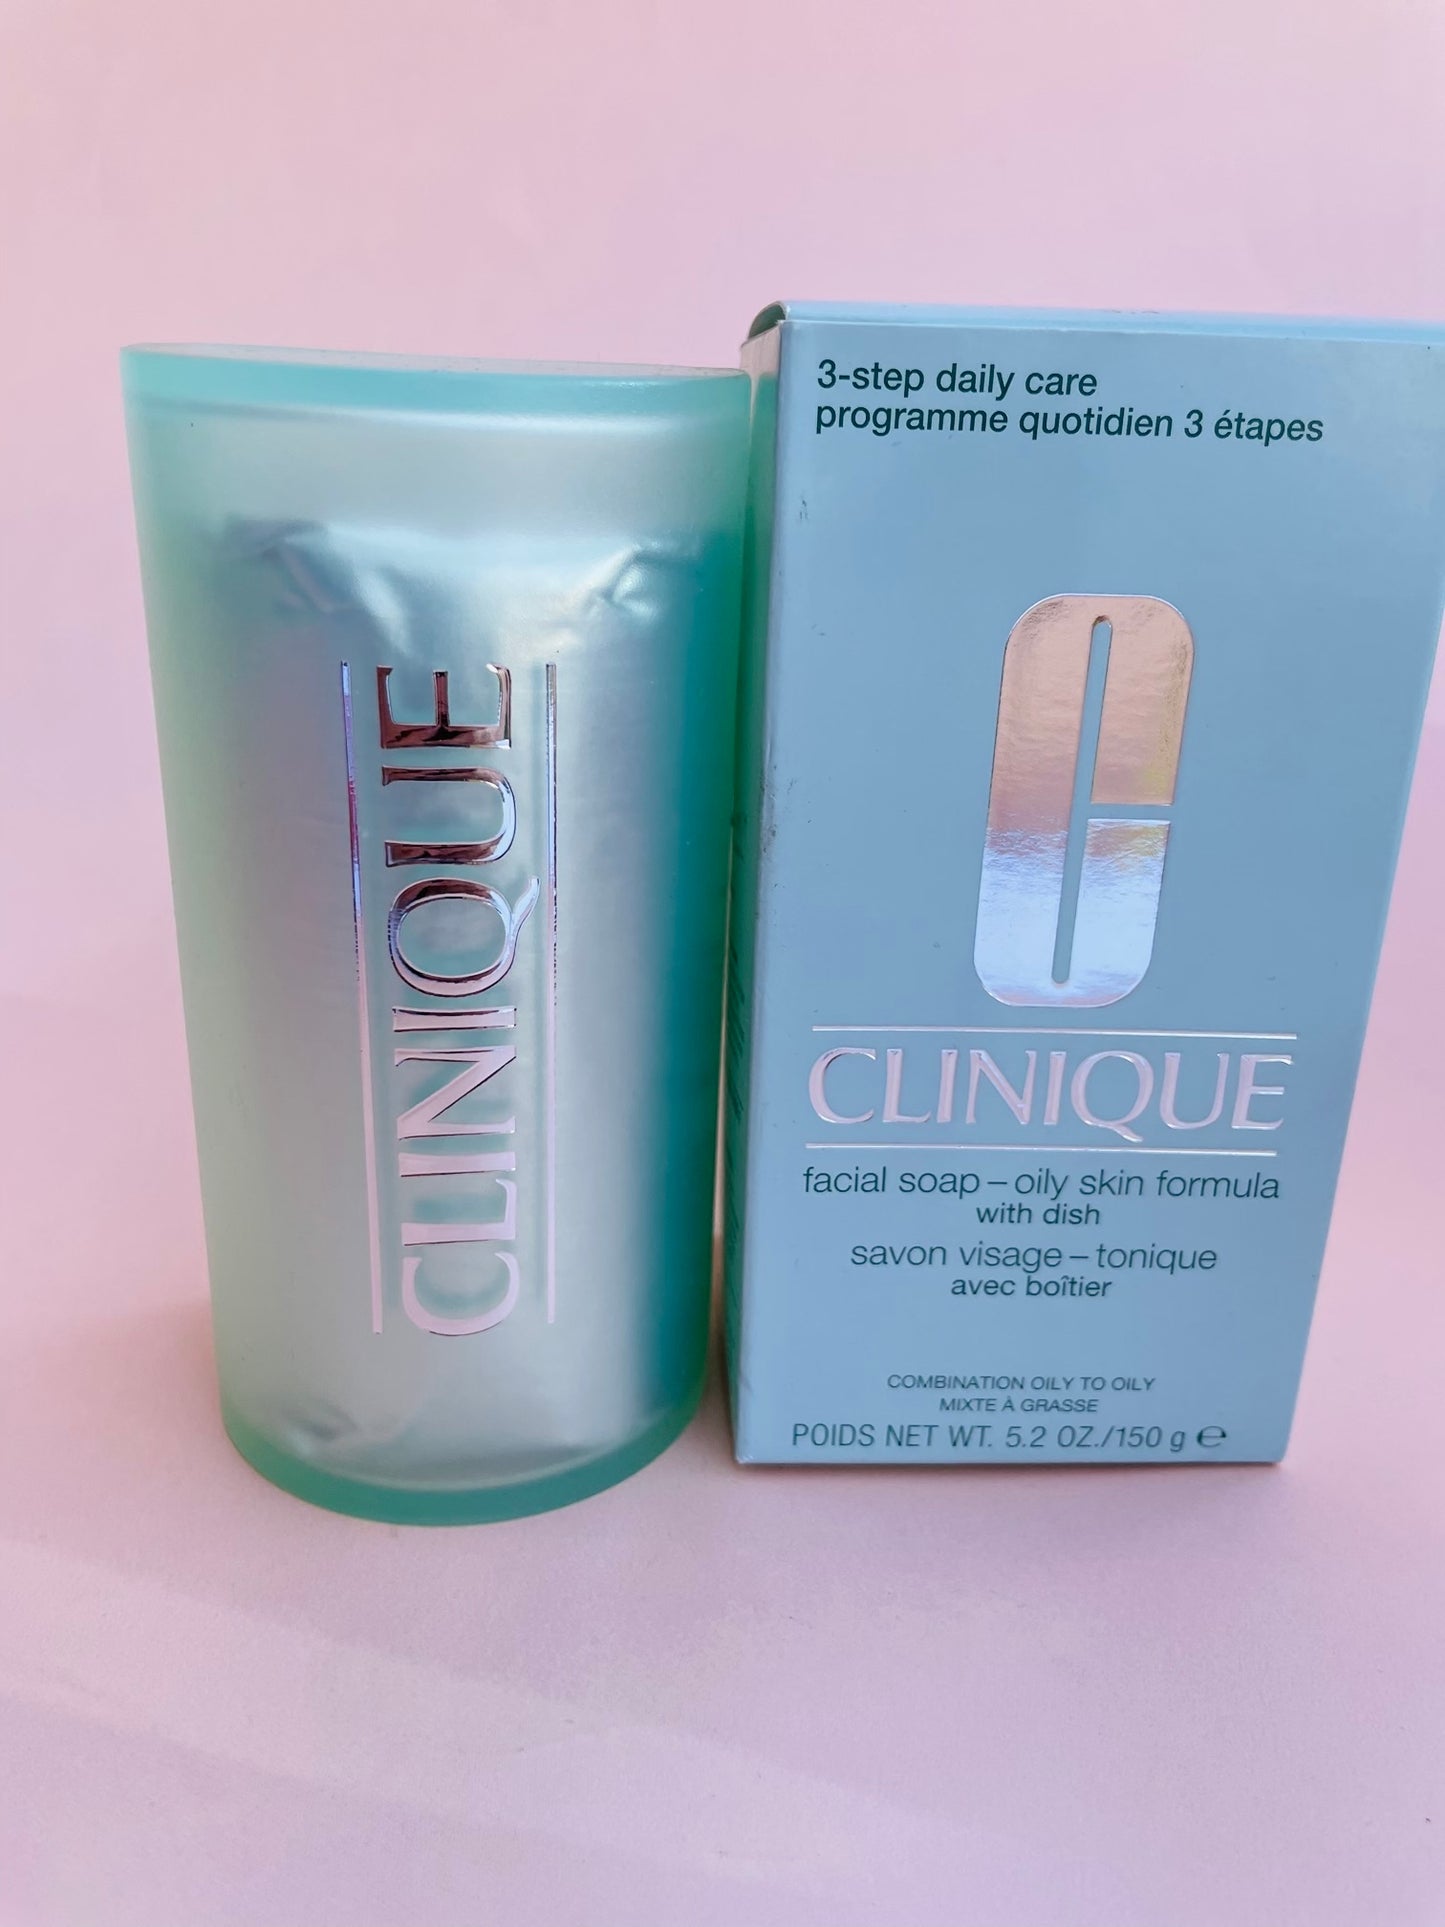 Clinique soap for oily skin